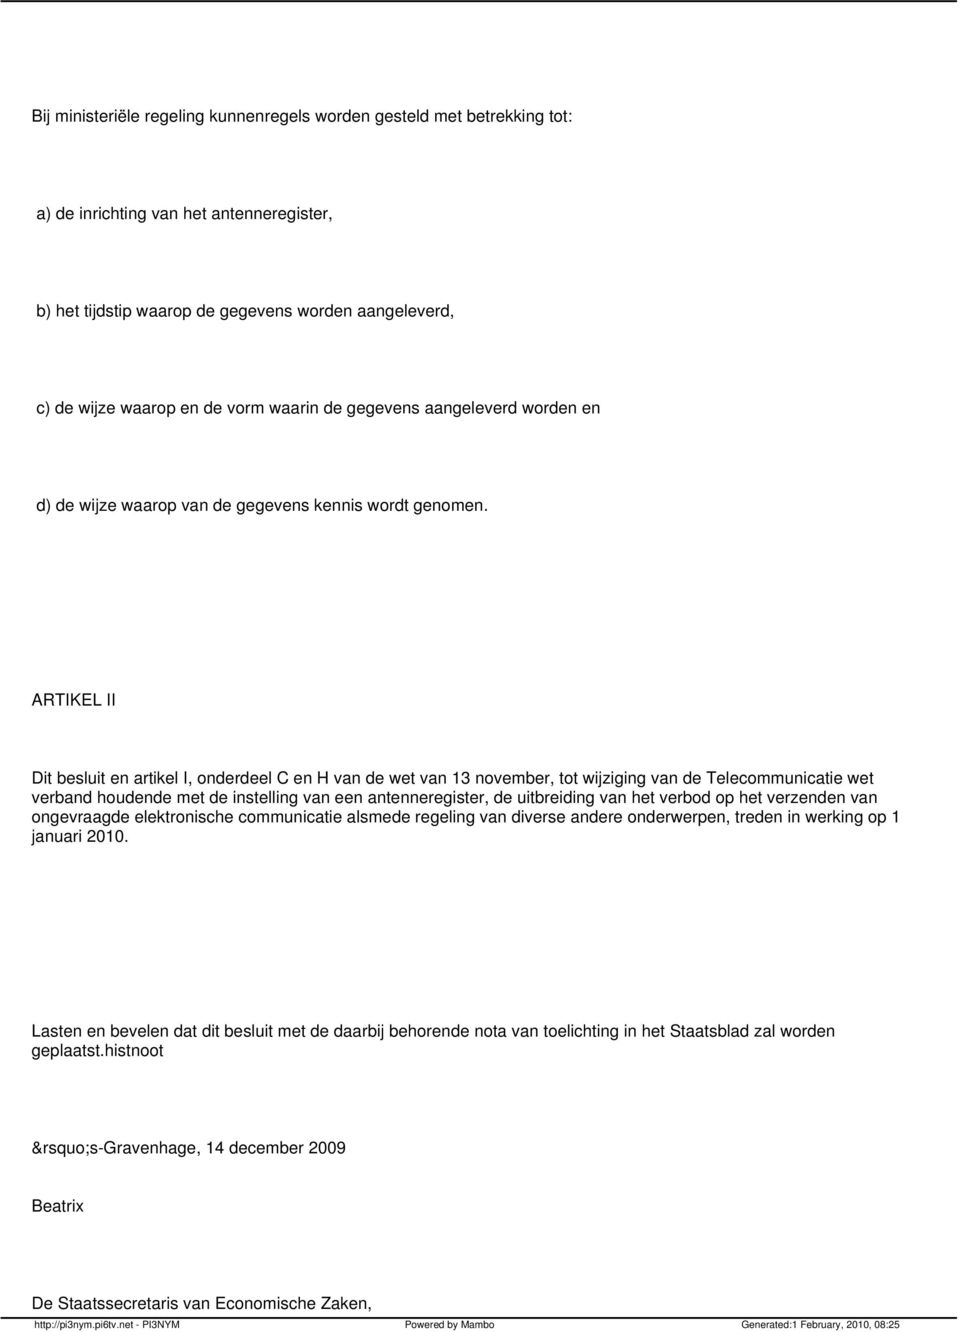 ARTIKEL II Dit besluit en artikel I, onderdeel C en H van de wet van 13 november, tot wijziging van de Telecommunicatie wet verband houdende met de instelling van een antenneregister, de uitbreiding